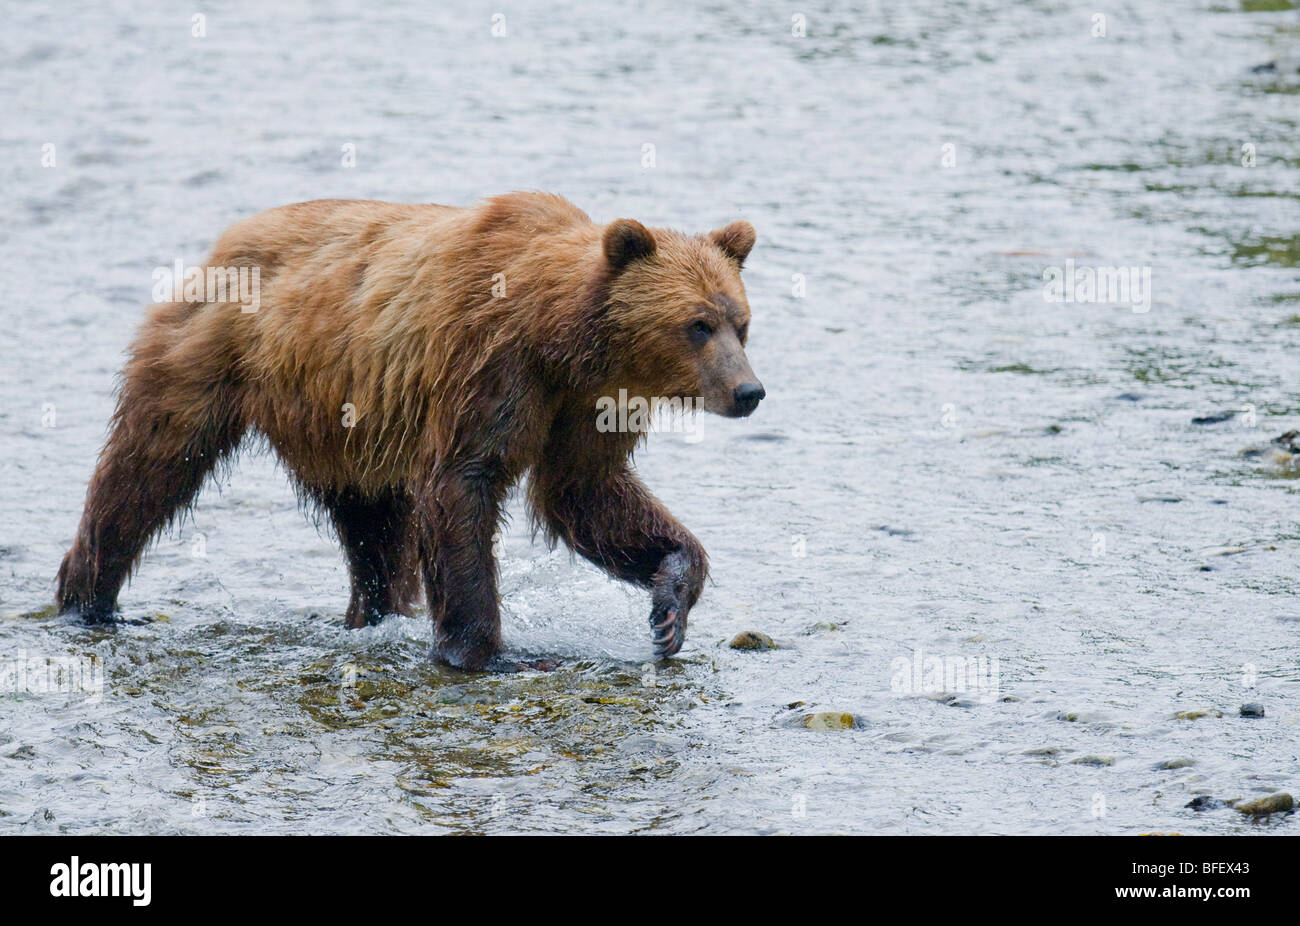 Oso grizzly (Ursus arctos horribilis) Adulto viendo del salmón en desove de stream. En zonas costeras grizzliy frecuenta arroyos Foto de stock